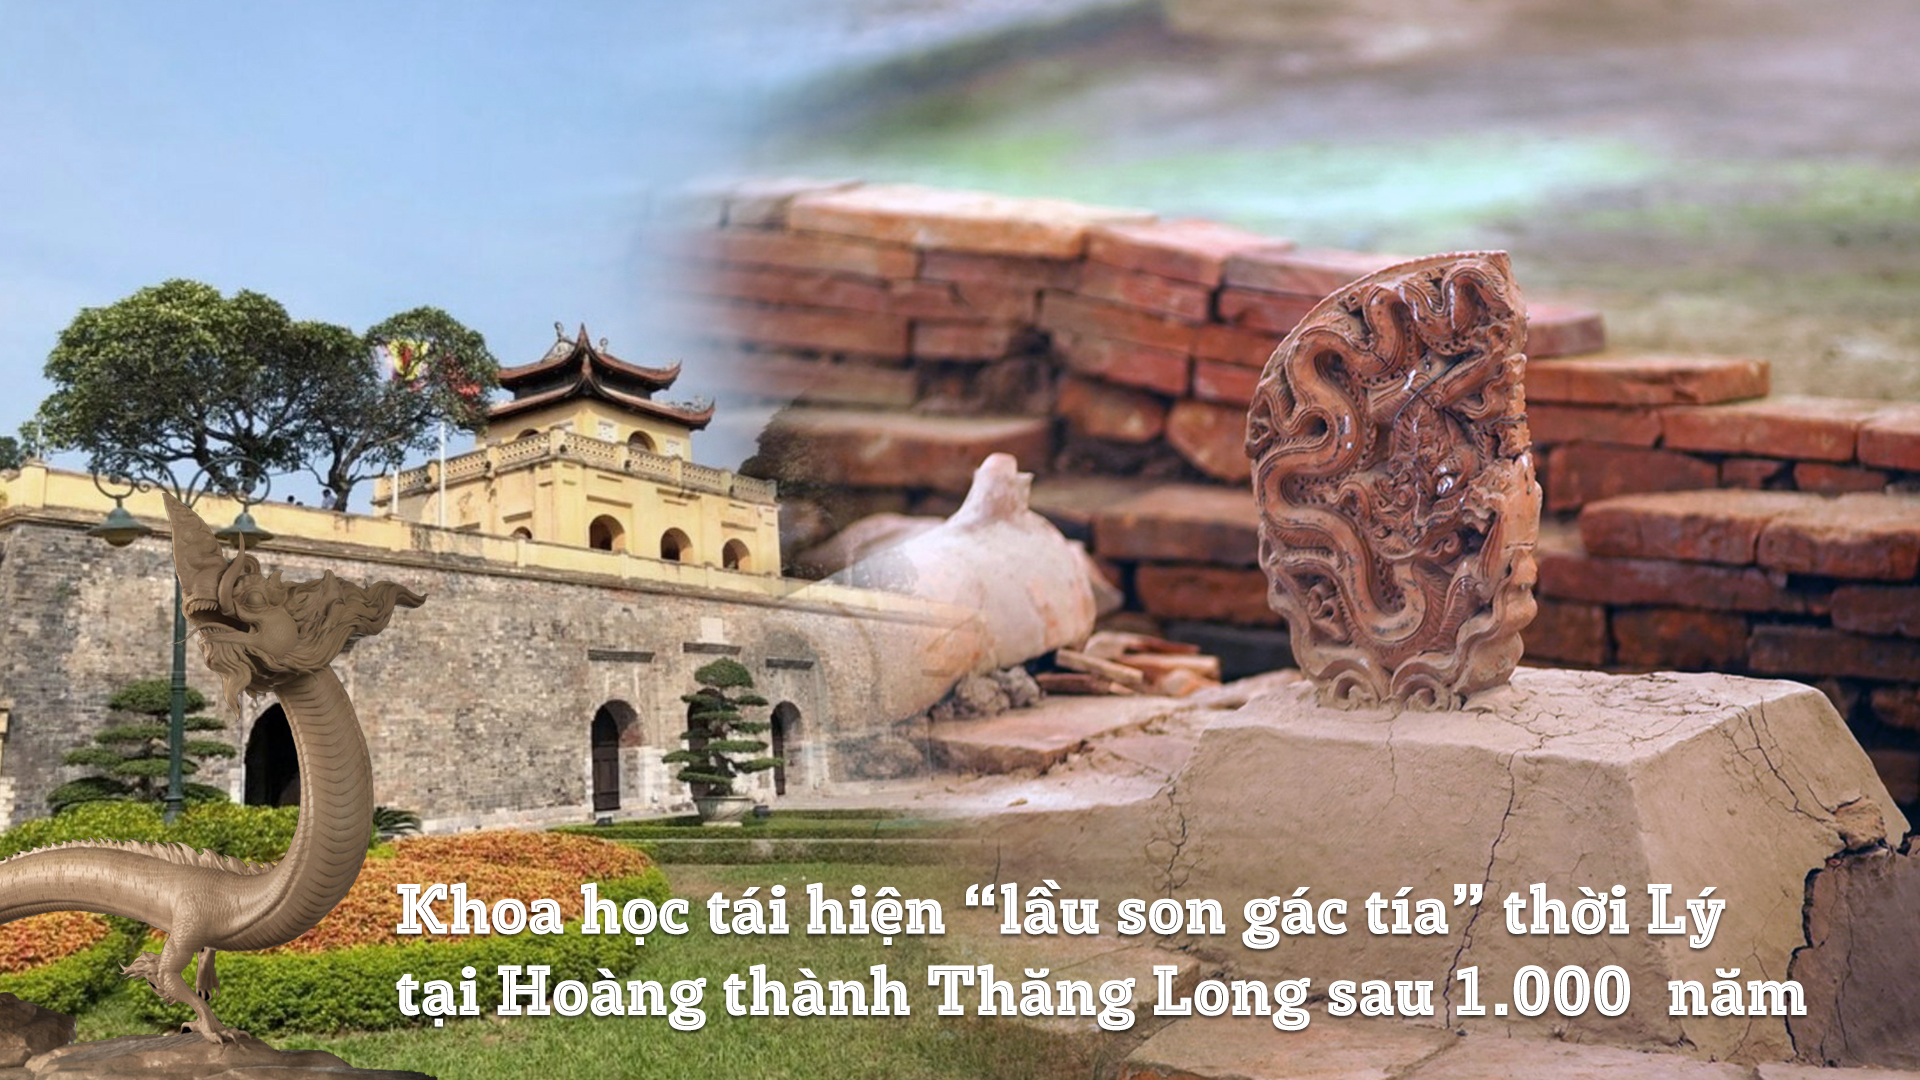 “Lầu son gác tía” Hoàng thành Thăng Long 1000 năm trước qua hình ảnh 3D - Ảnh 1.